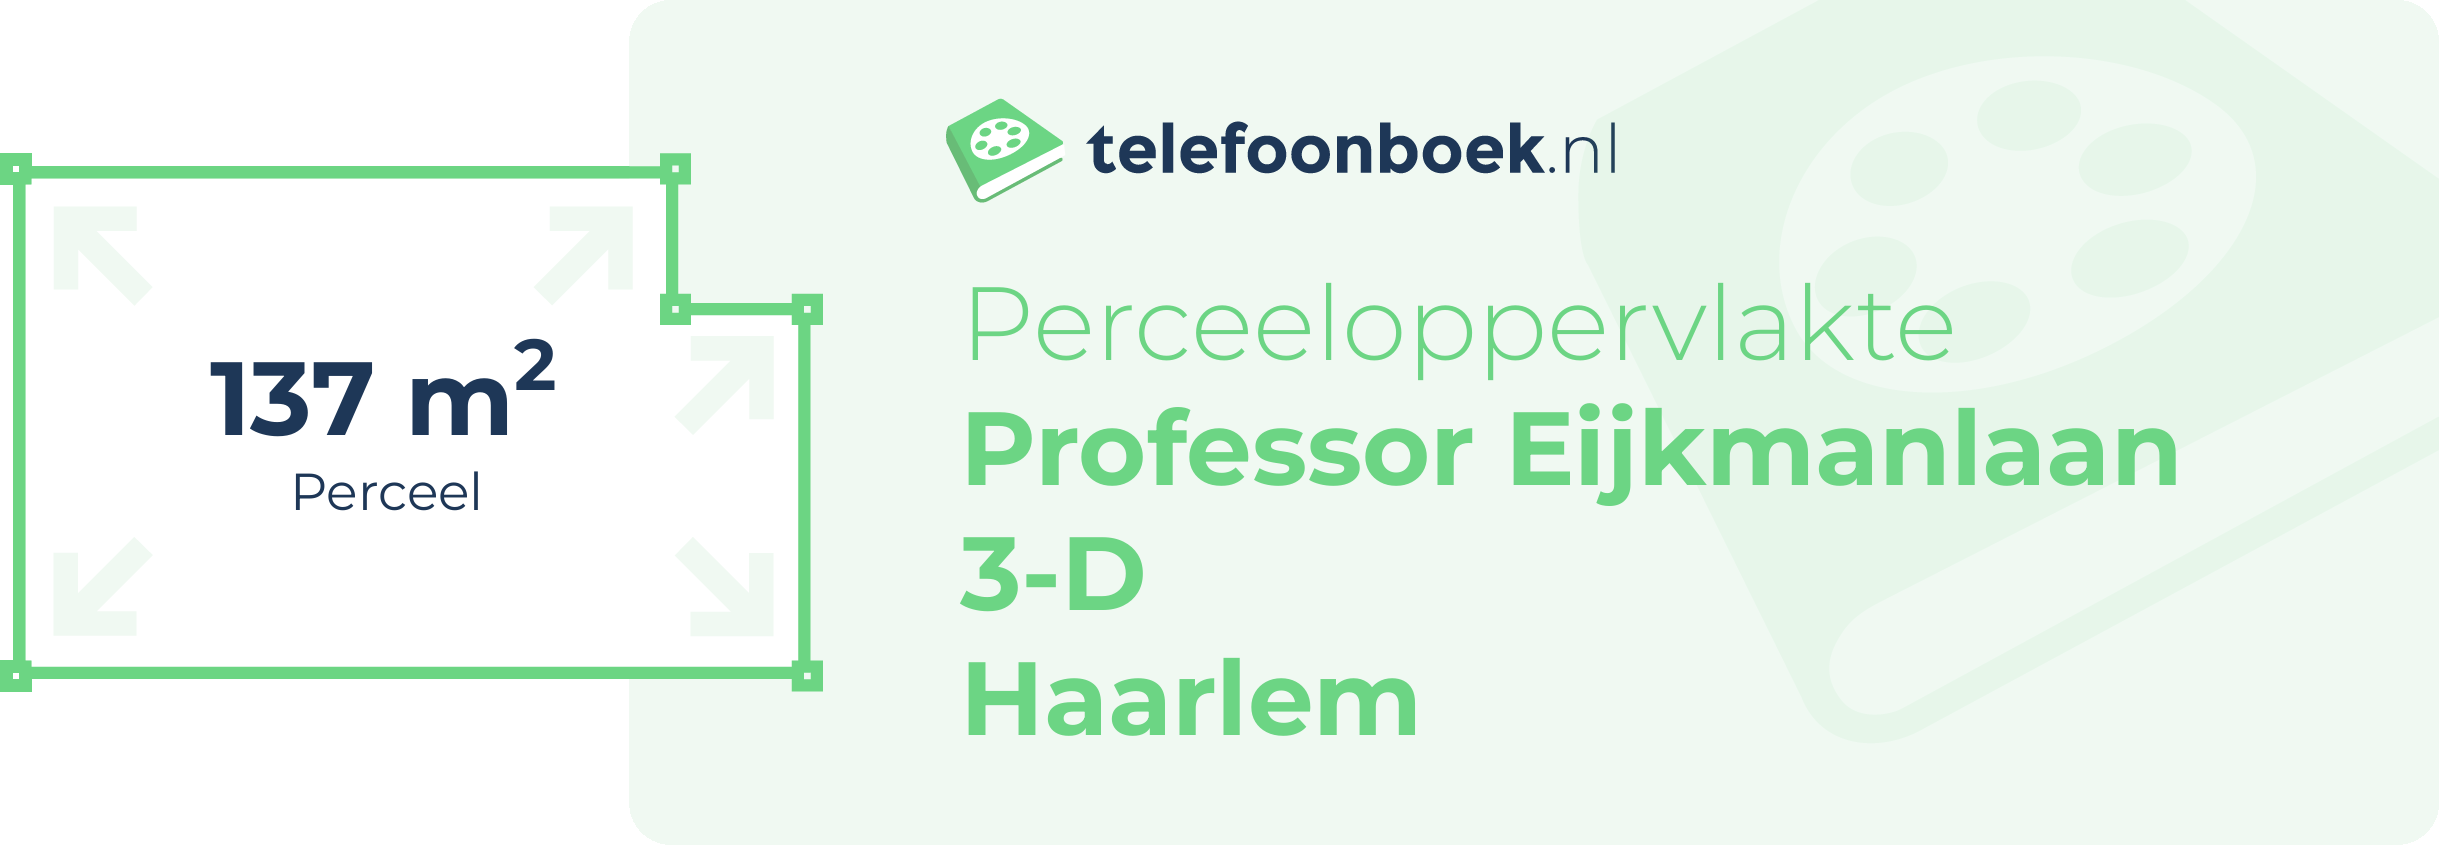 Perceeloppervlakte Professor Eijkmanlaan 3-D Haarlem